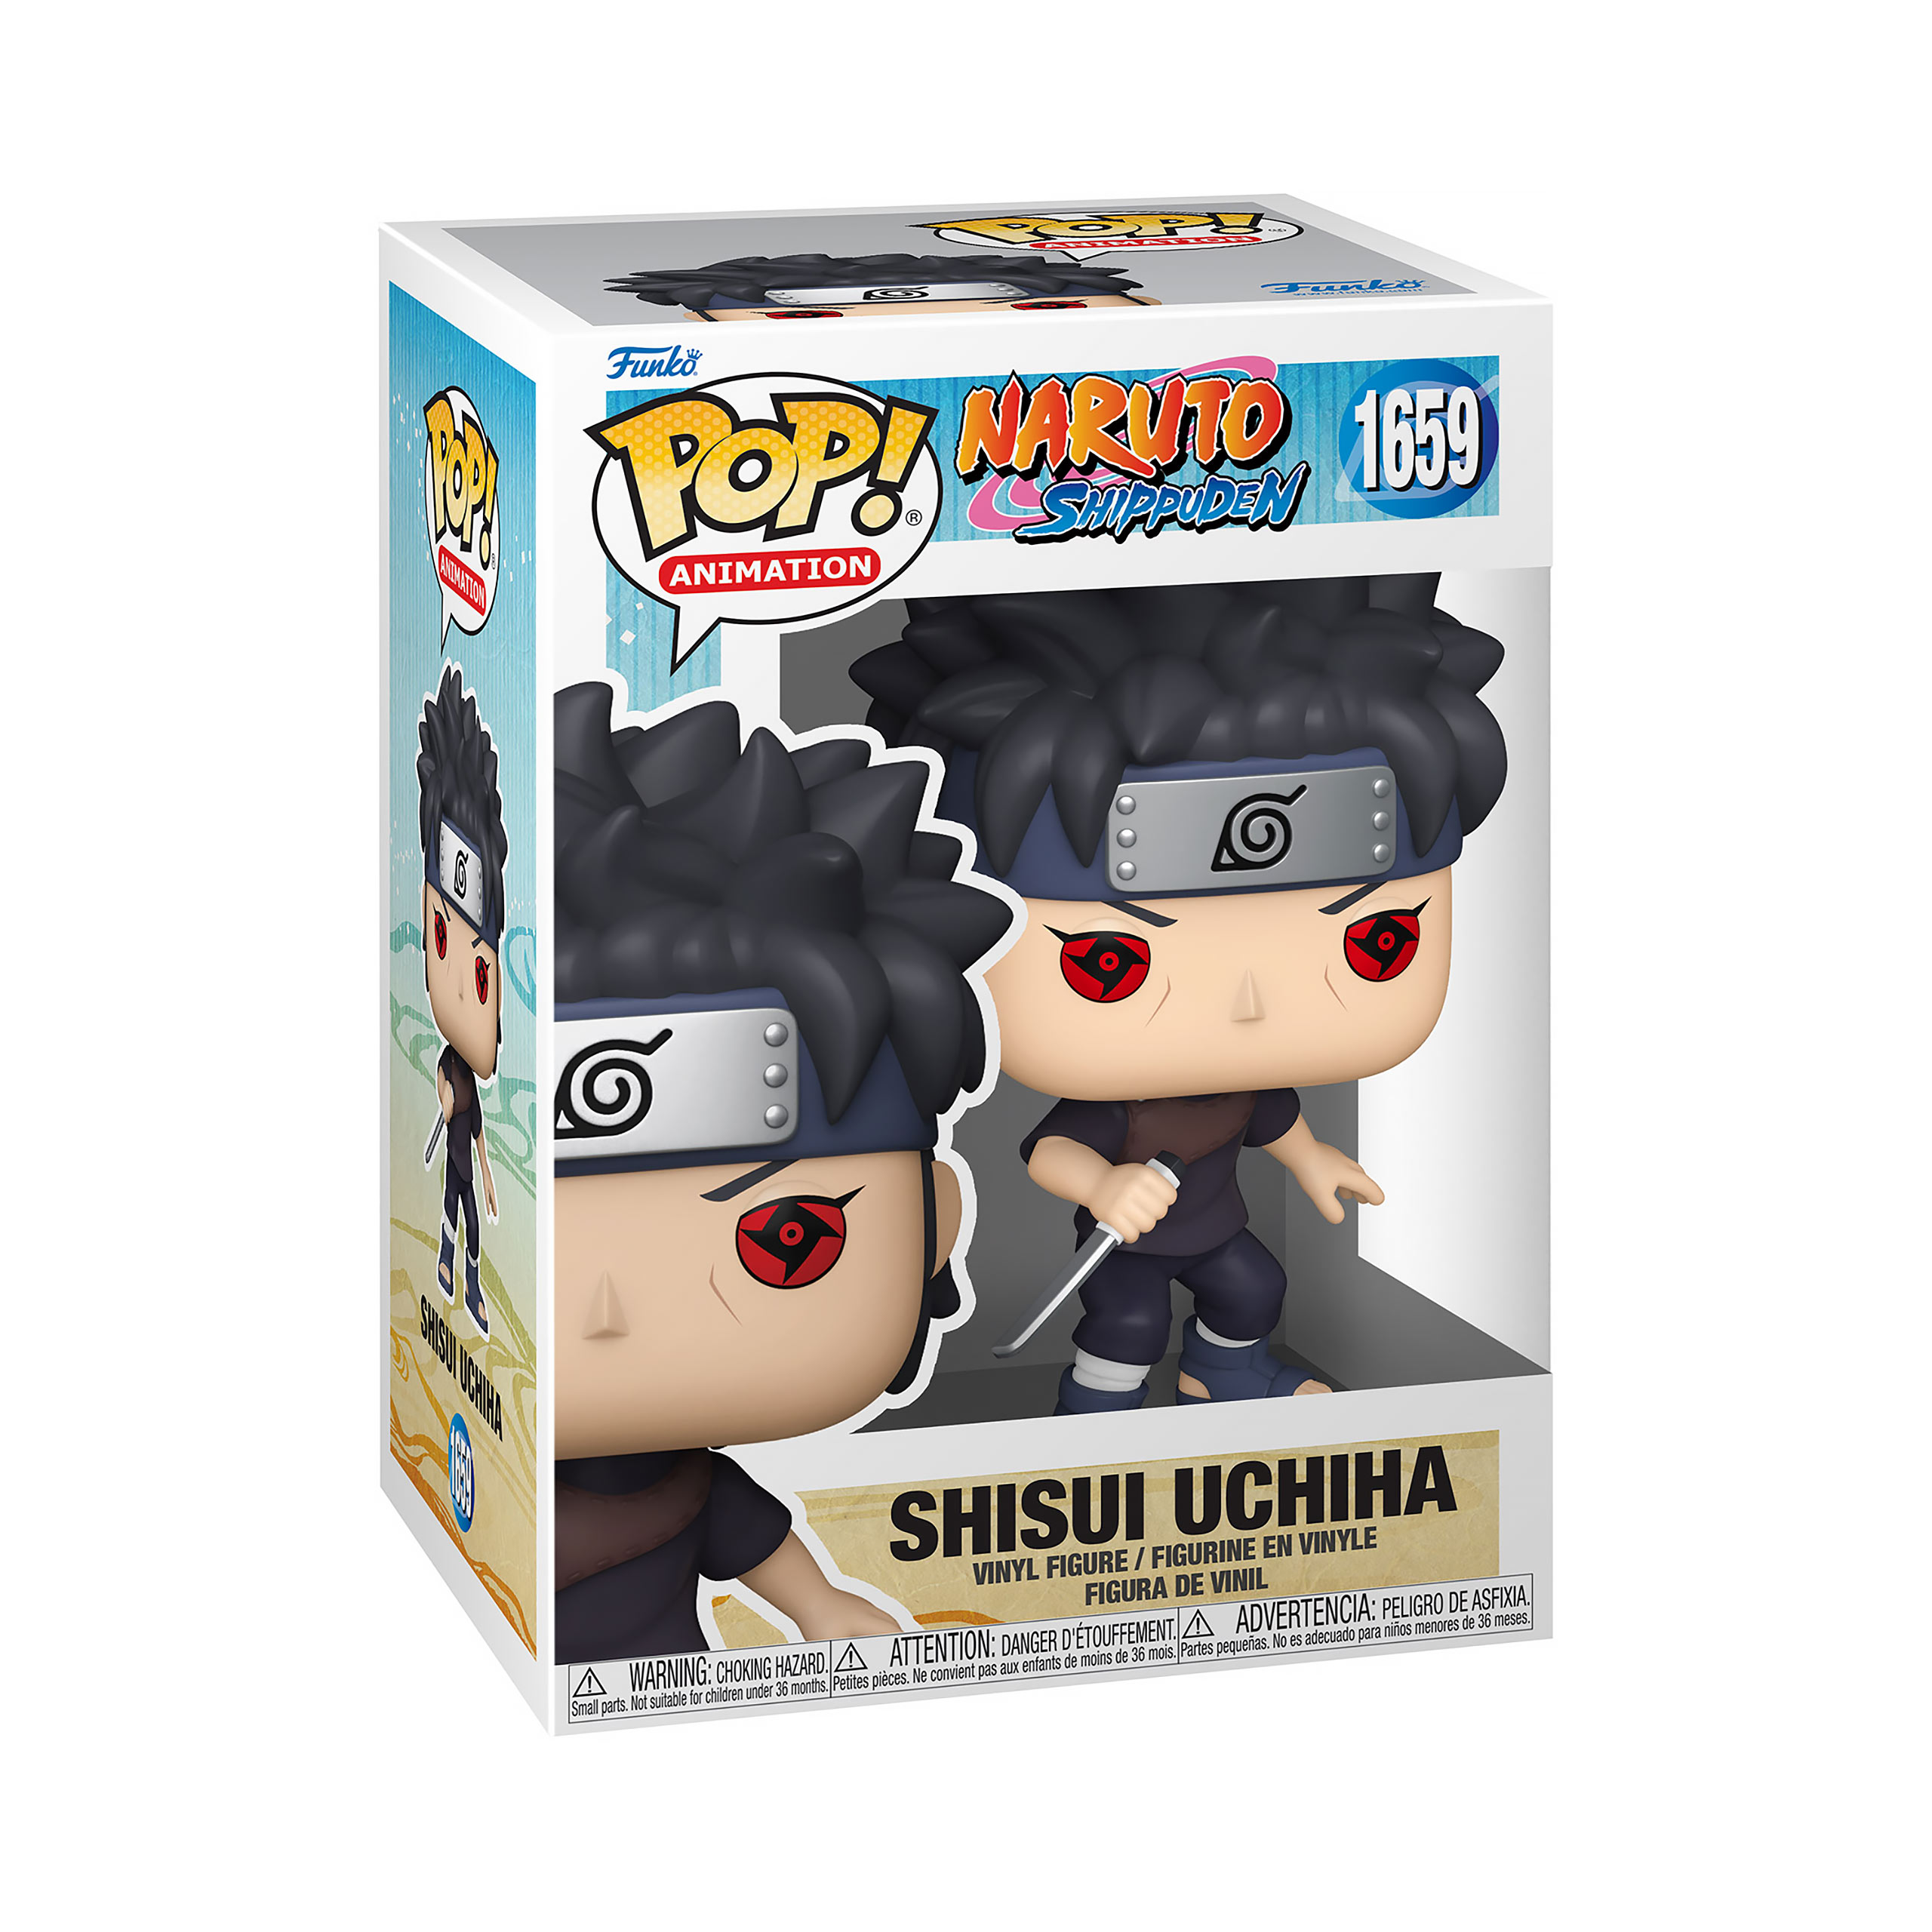 Naruto - Shisui Uchiha Funko Pop Figure